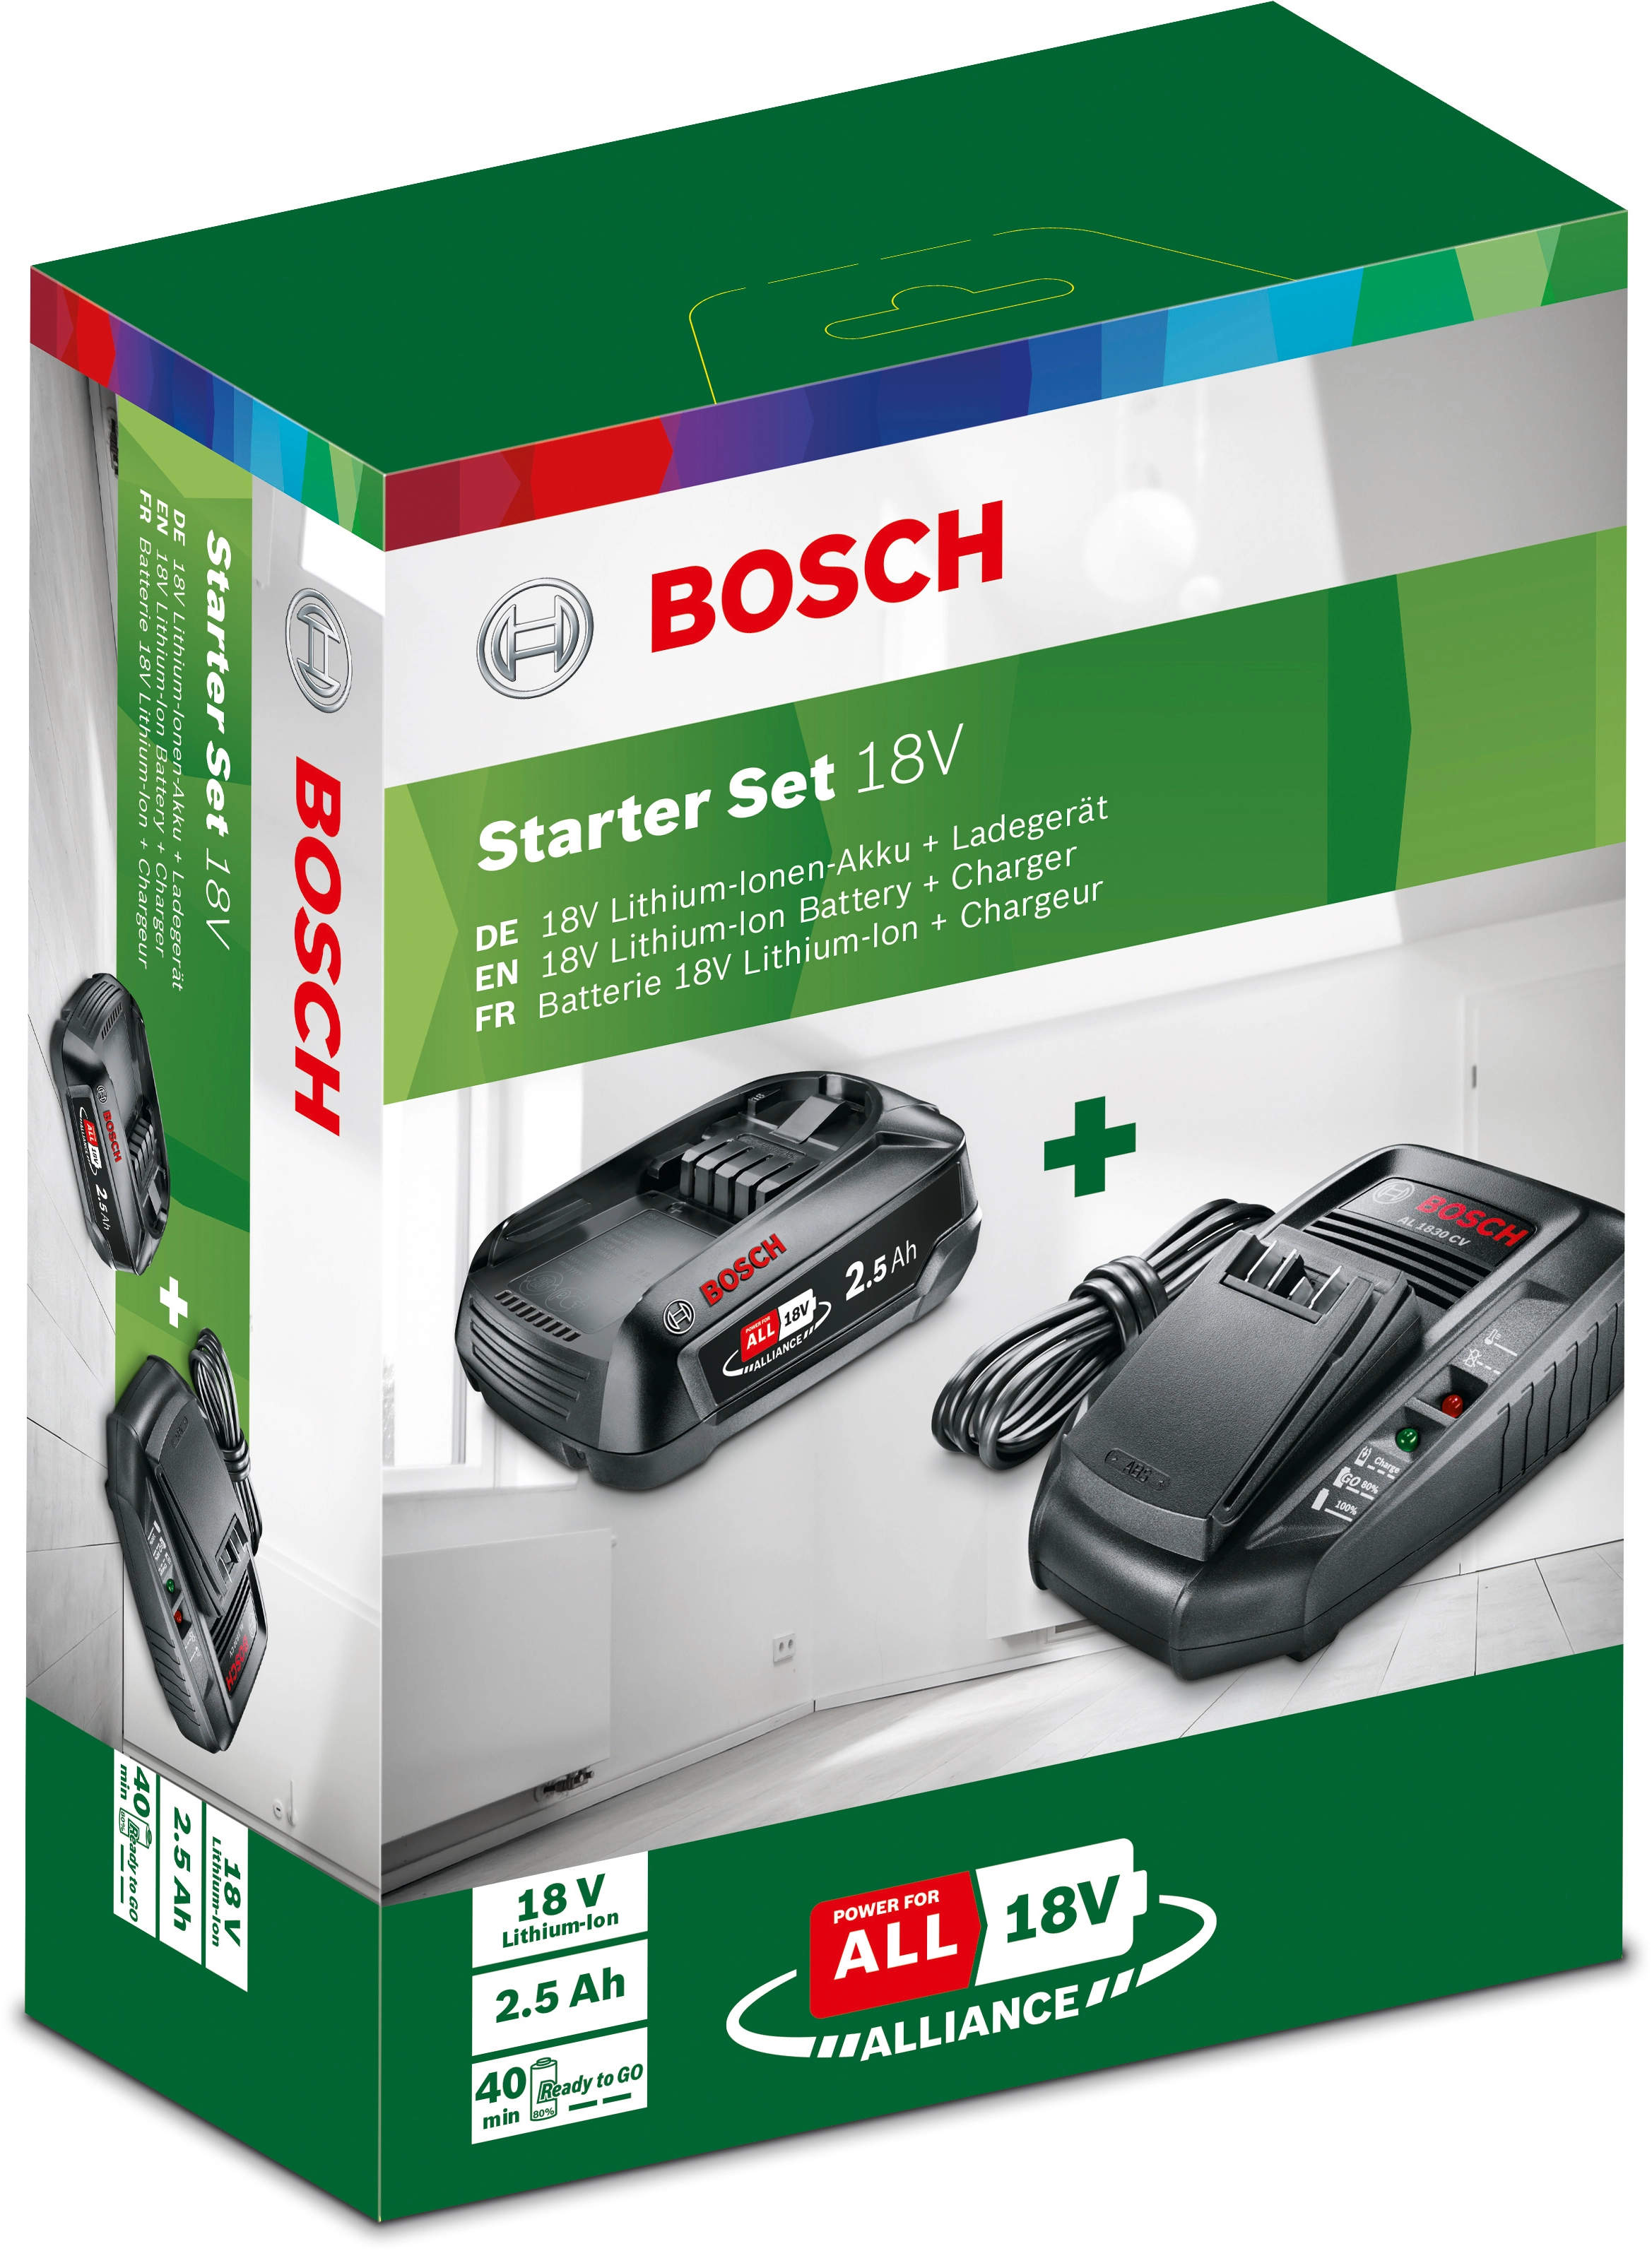 Bosch pack de base batterie 18V Li-Ion 2,5Ah + AL 1810 CV chargeur